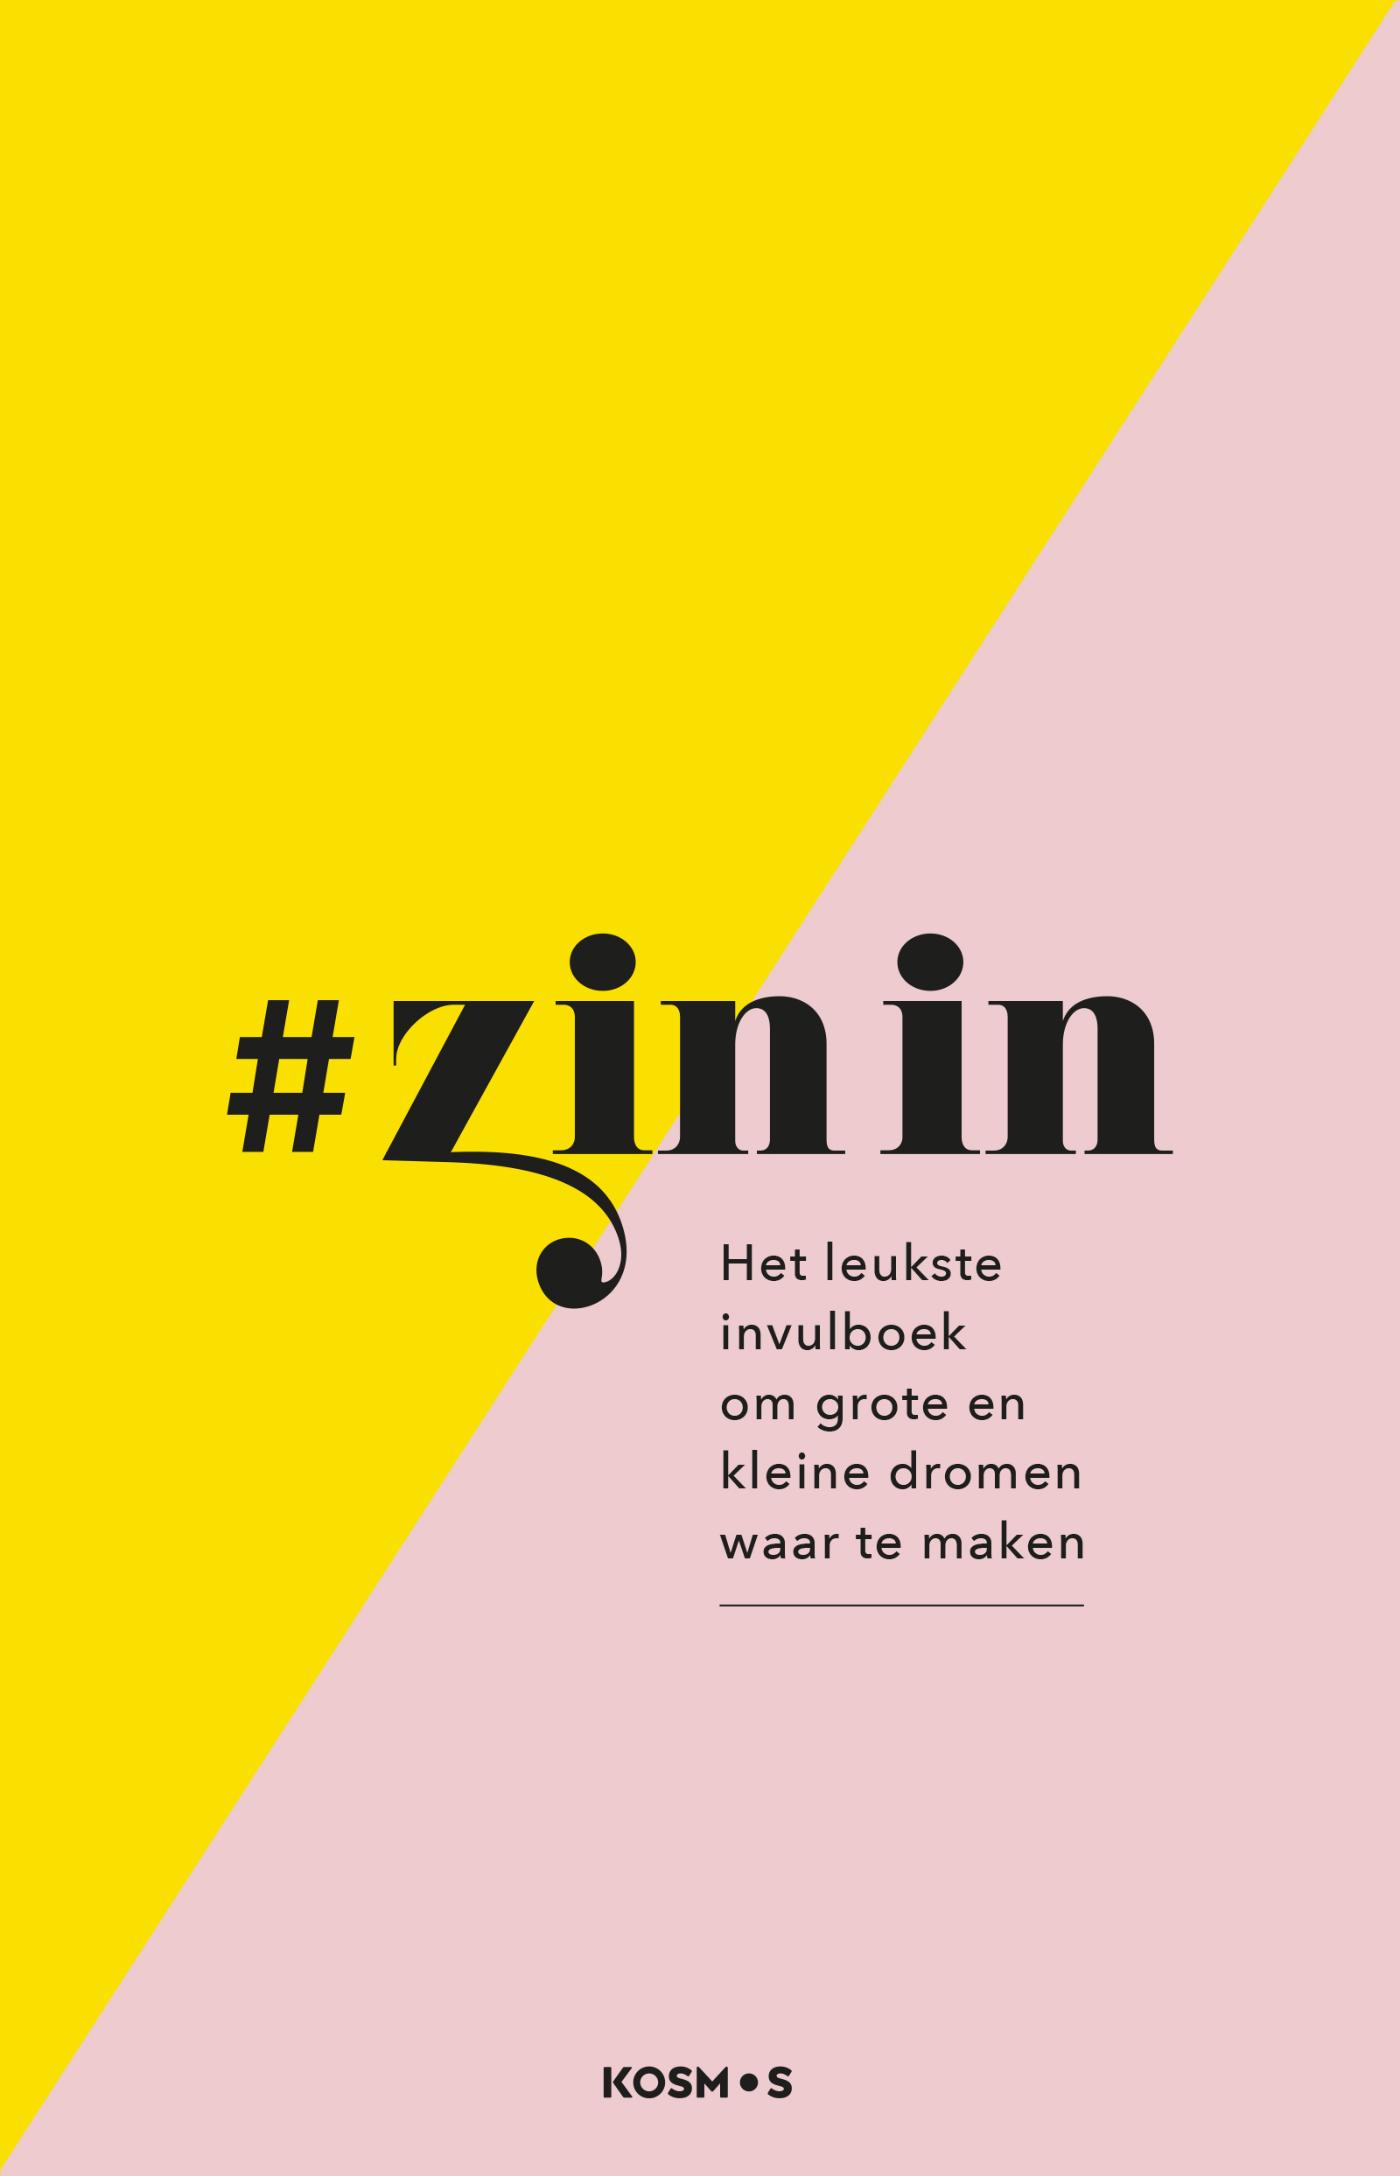 #zinin